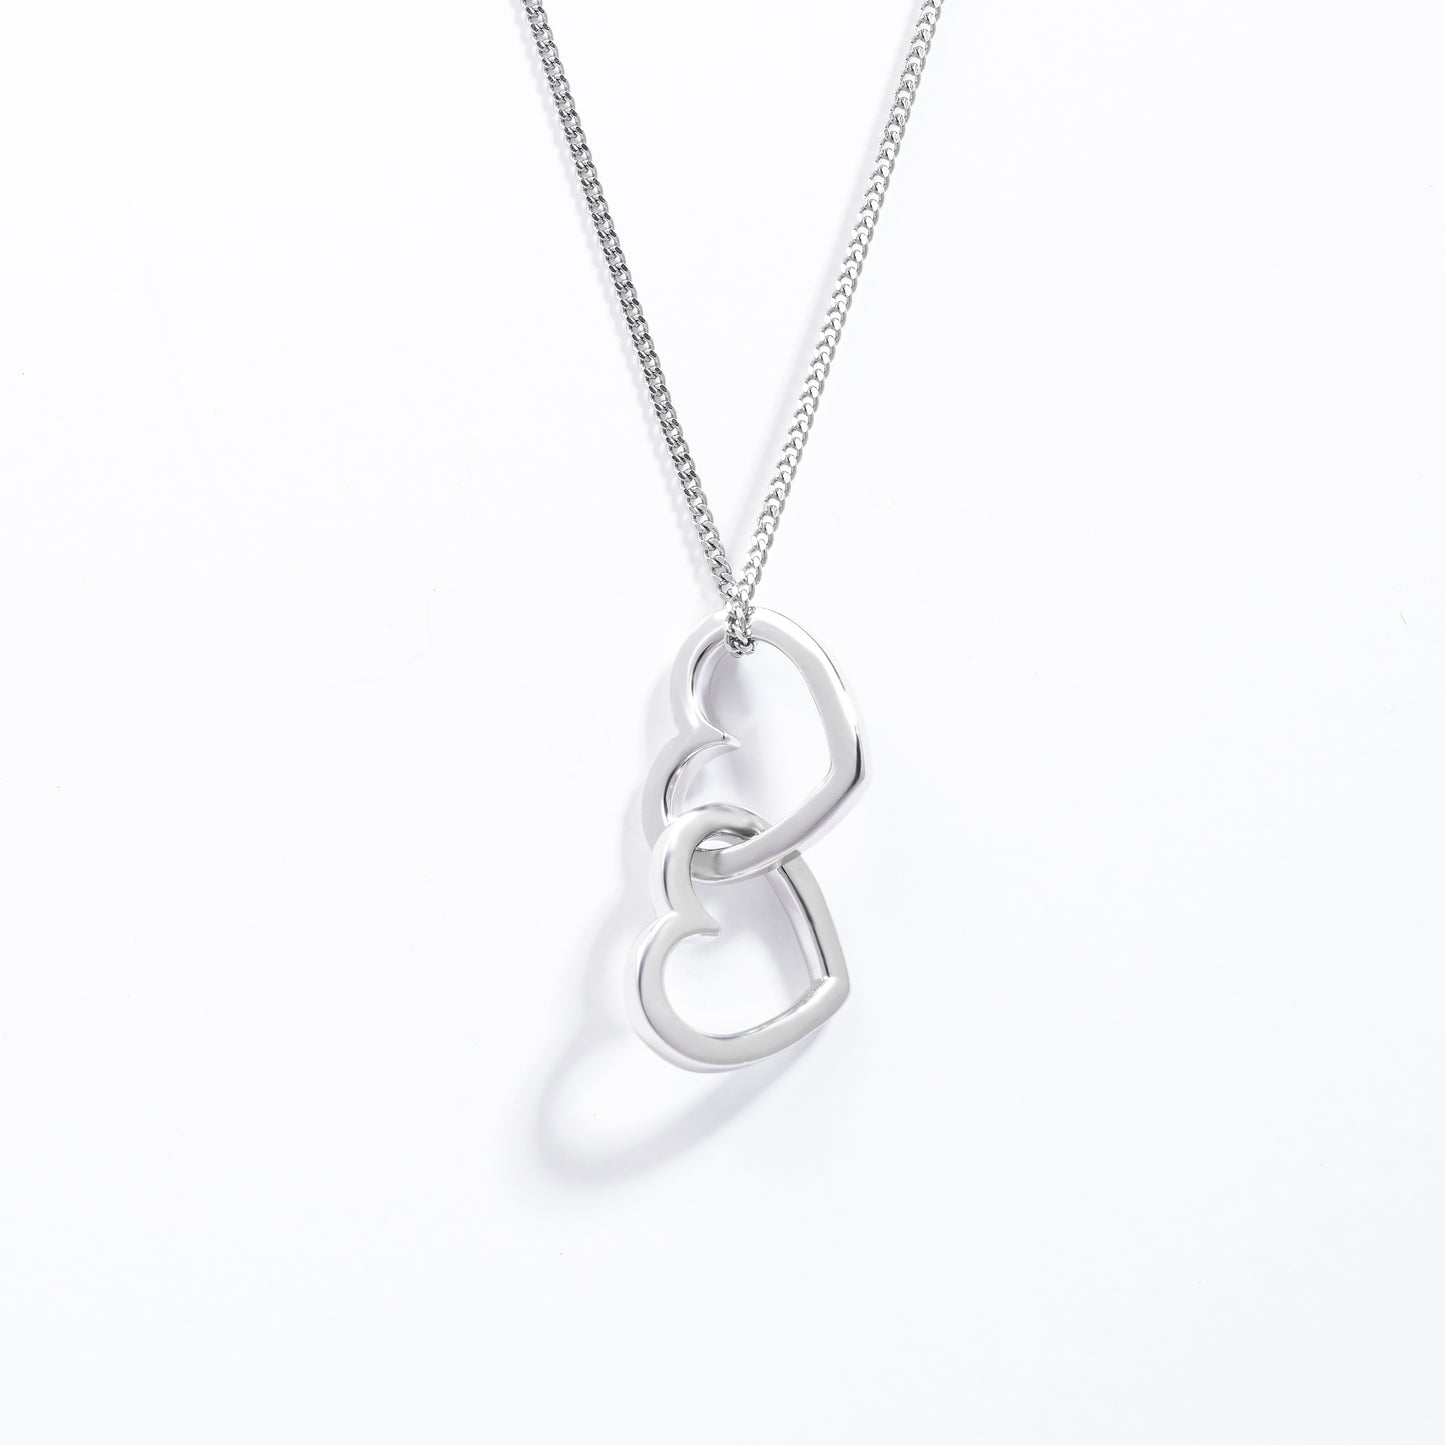 Sterling Silver Double Interlocking Open Heart Pendant